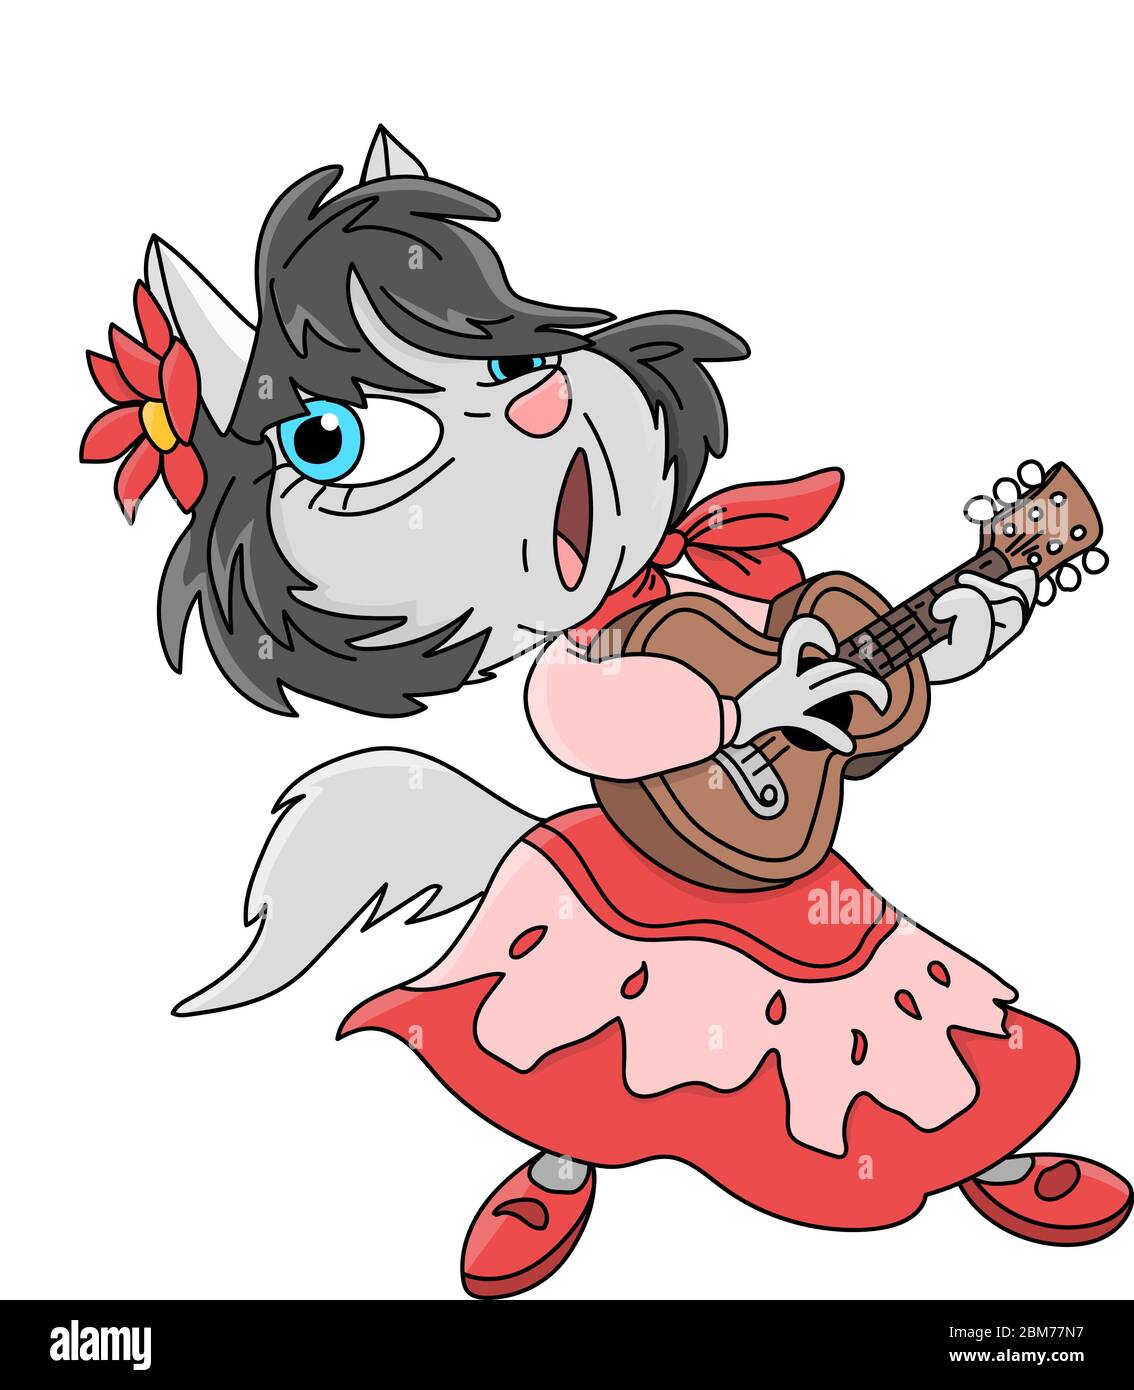 Dessin animé chat gitan jouant de la guitare et chant illustration vectorielle Illustration de Vecteur